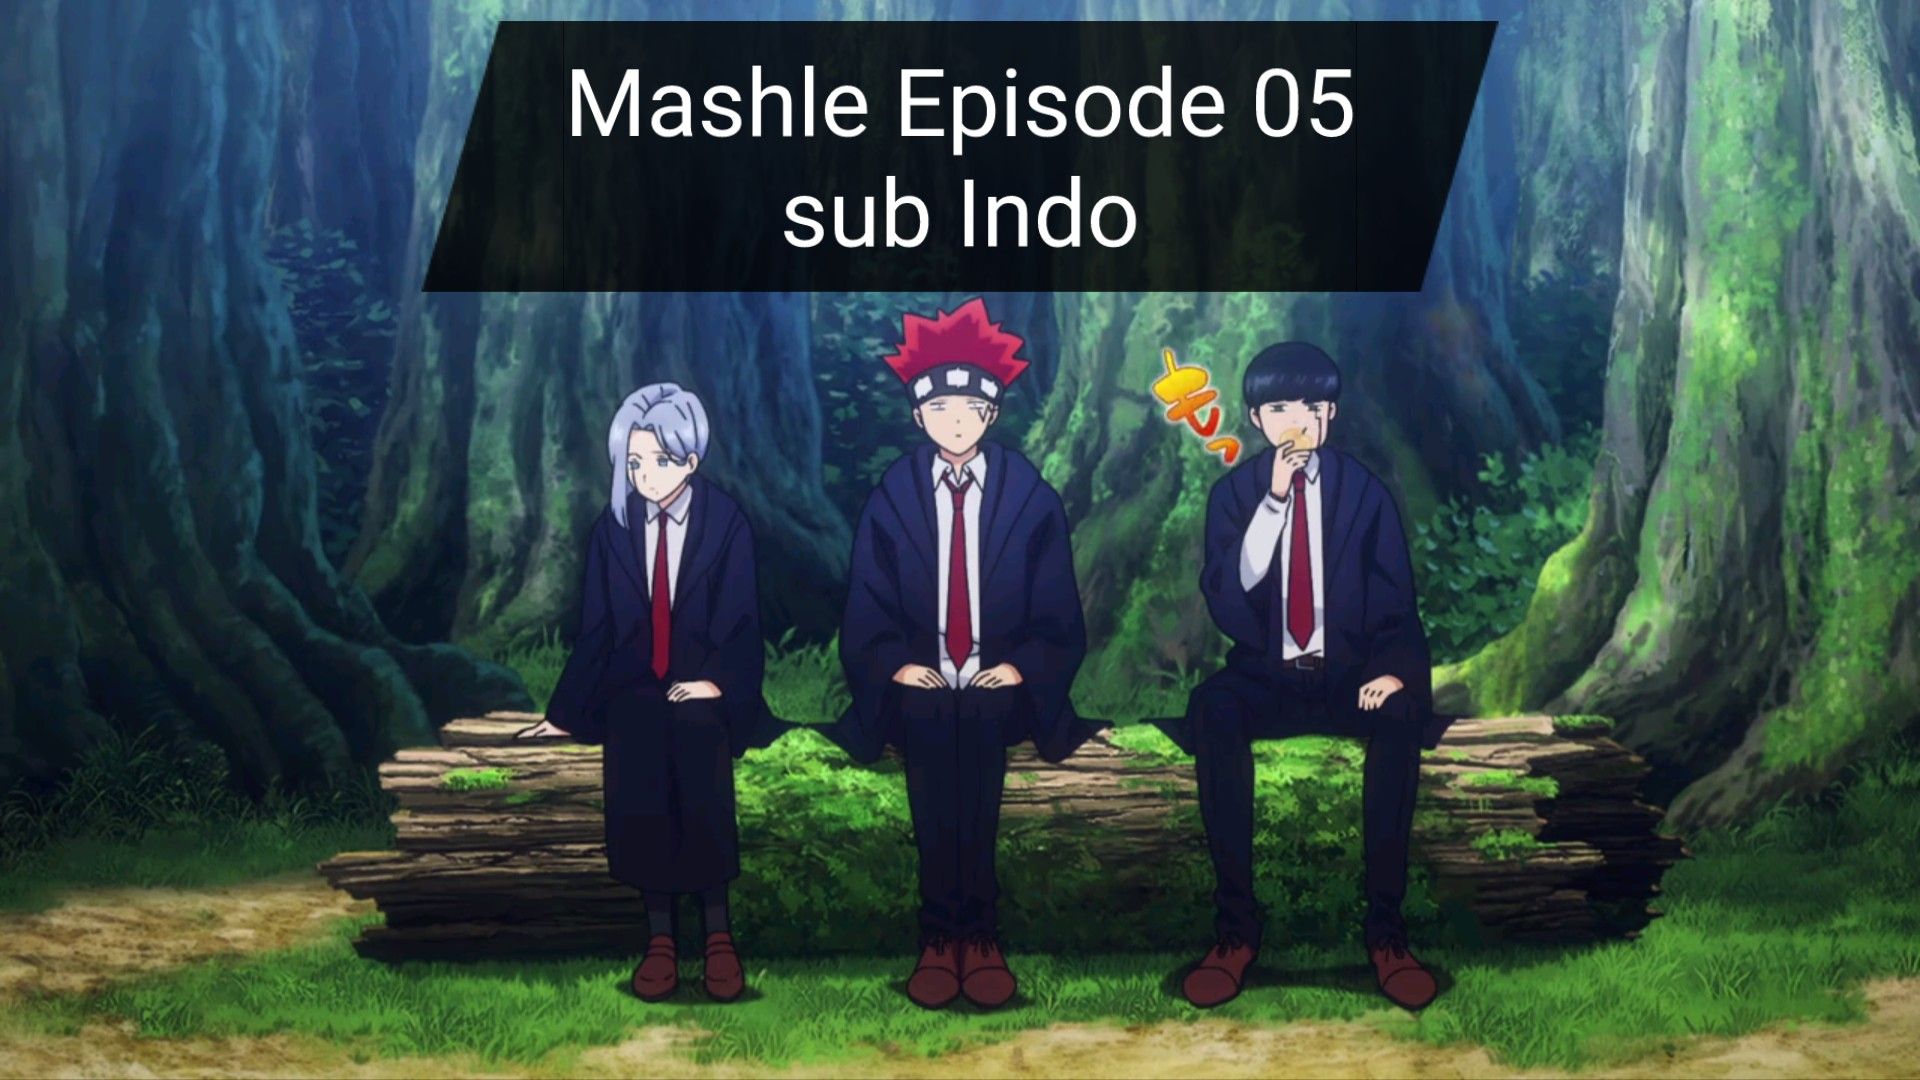 Mashle Episode 05 Sub indo - BiliBili